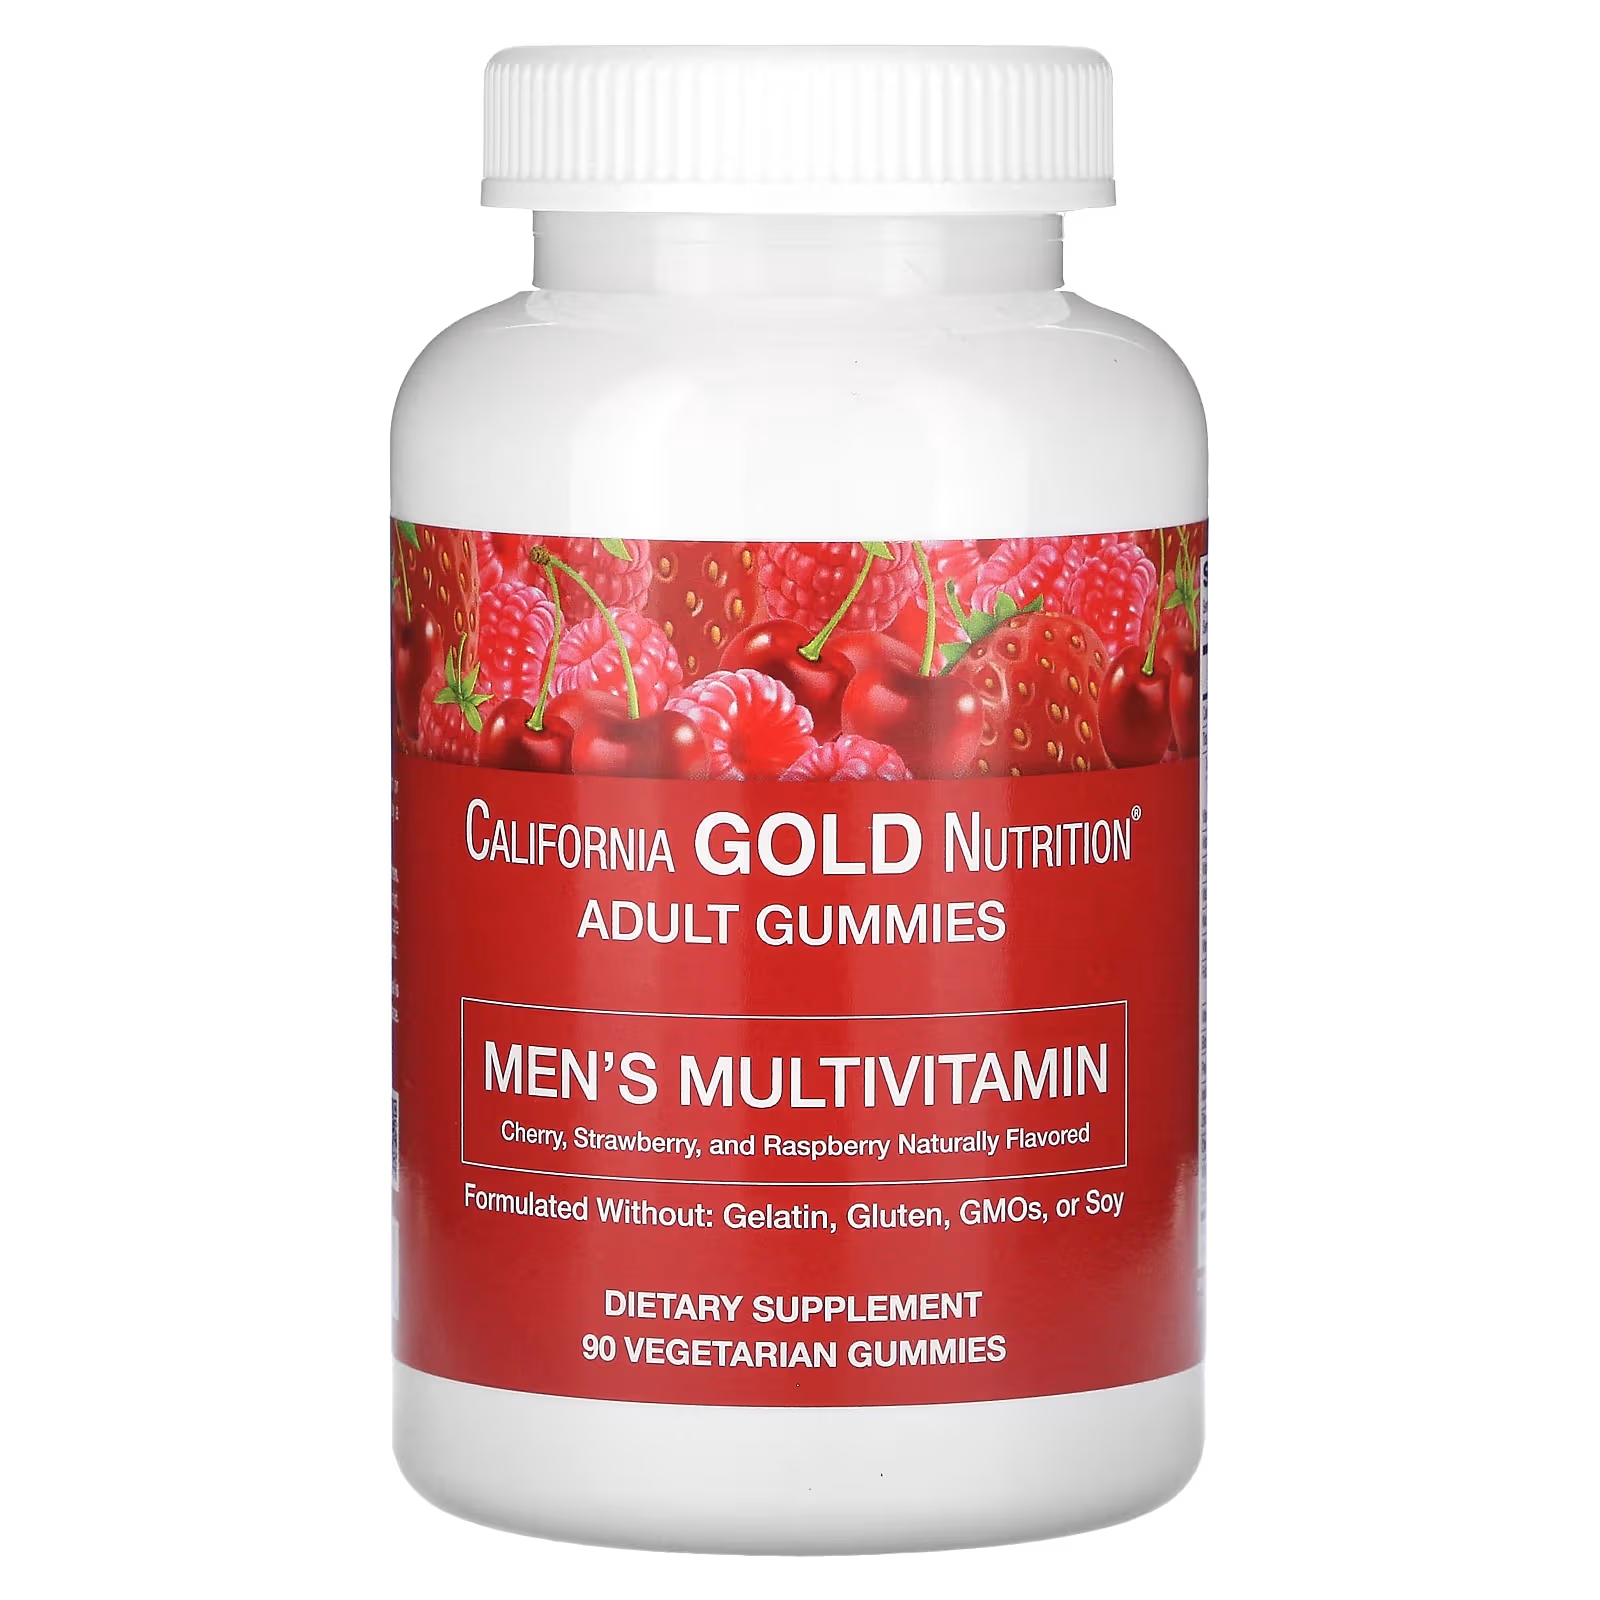 Мультивитаминные жевательные конфеты для мужчин California Gold Nutrition со смешанным ягодно-фруктовым вкусом, 90 жевательных конфет фото